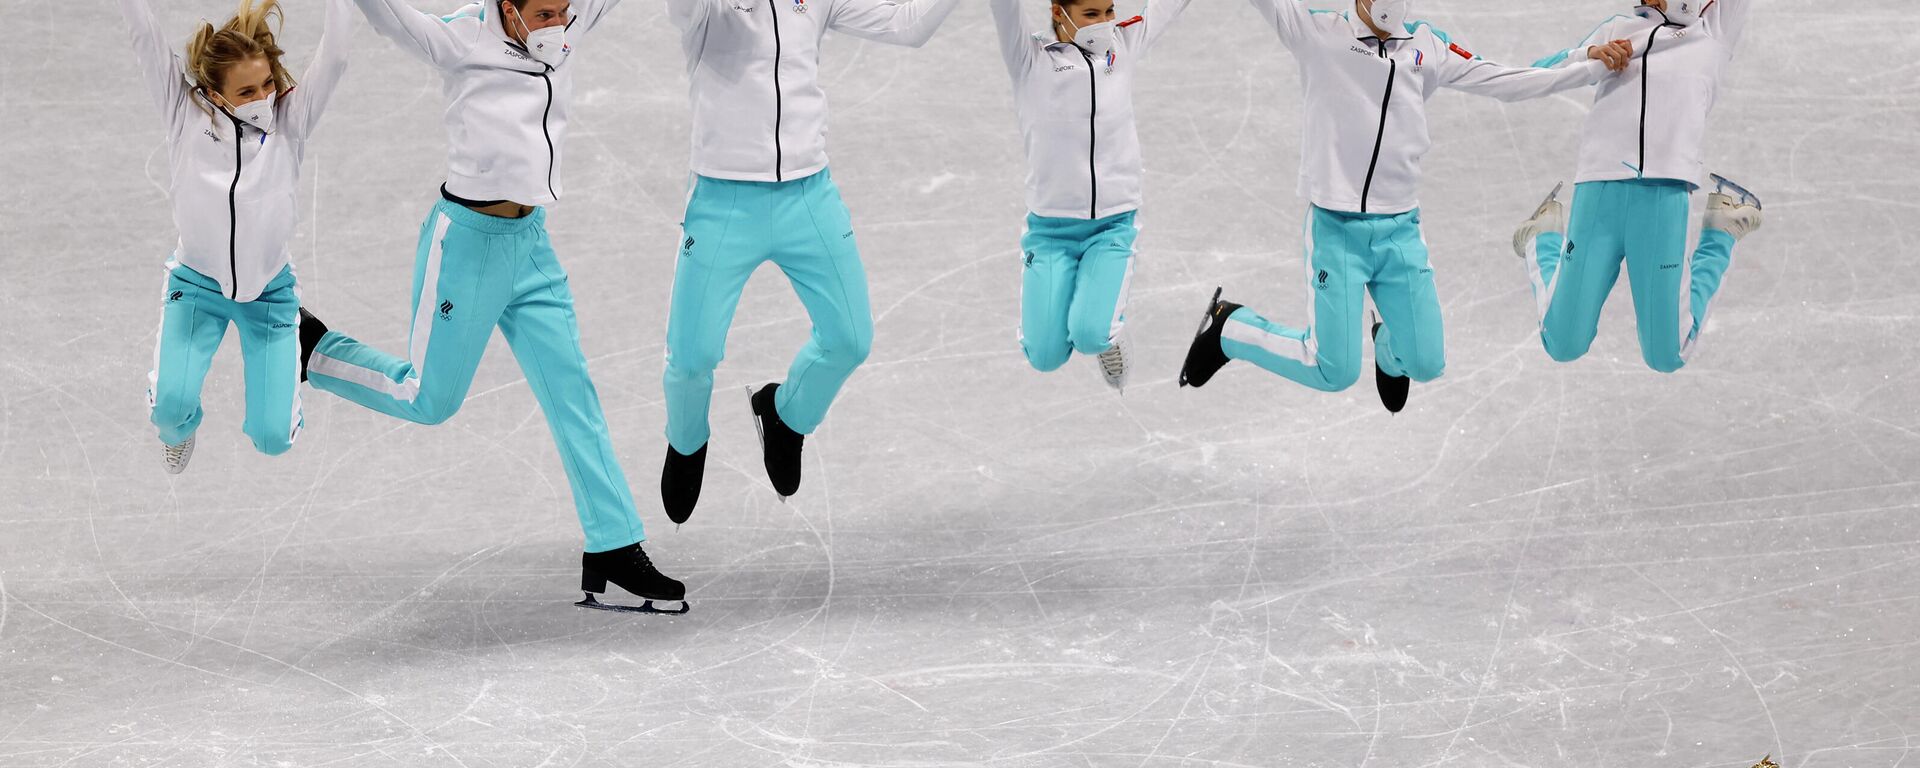 Pekin 2022 Kış Olimpiyat Oyunları'nda (#Beijing2022) artistik buz pateni tek erkeklerde yarışan Mark Kondratyuk, çiftlerde yarışan Anastasya Mişina ile Aleksandr Gallyamov, buz dansında yarışan Viktoriya Sinitsina ile Nikita Katsalapov, tek kadınlarda yarışan Kamila Valiyeva, törende takım turnuvasında altın madalyanın sahibi olmalarını kutlarken - Sputnik Türkiye, 1920, 07.02.2022